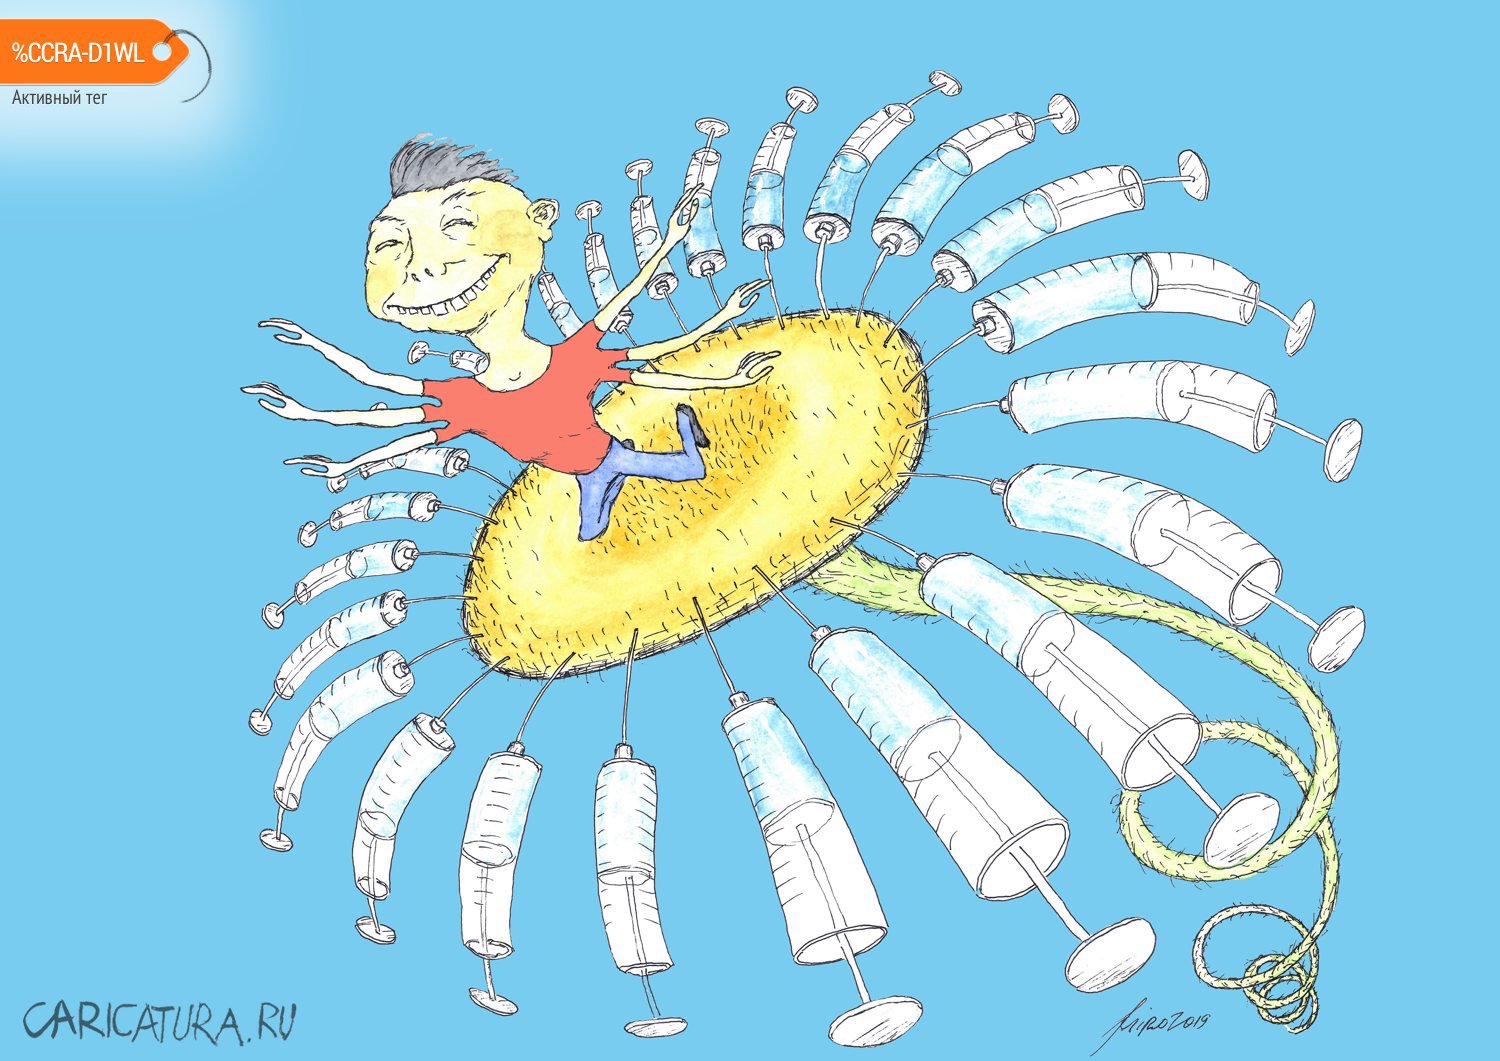 Карикатура "Вакцины от COVID-19", Игорь Мирошниченко